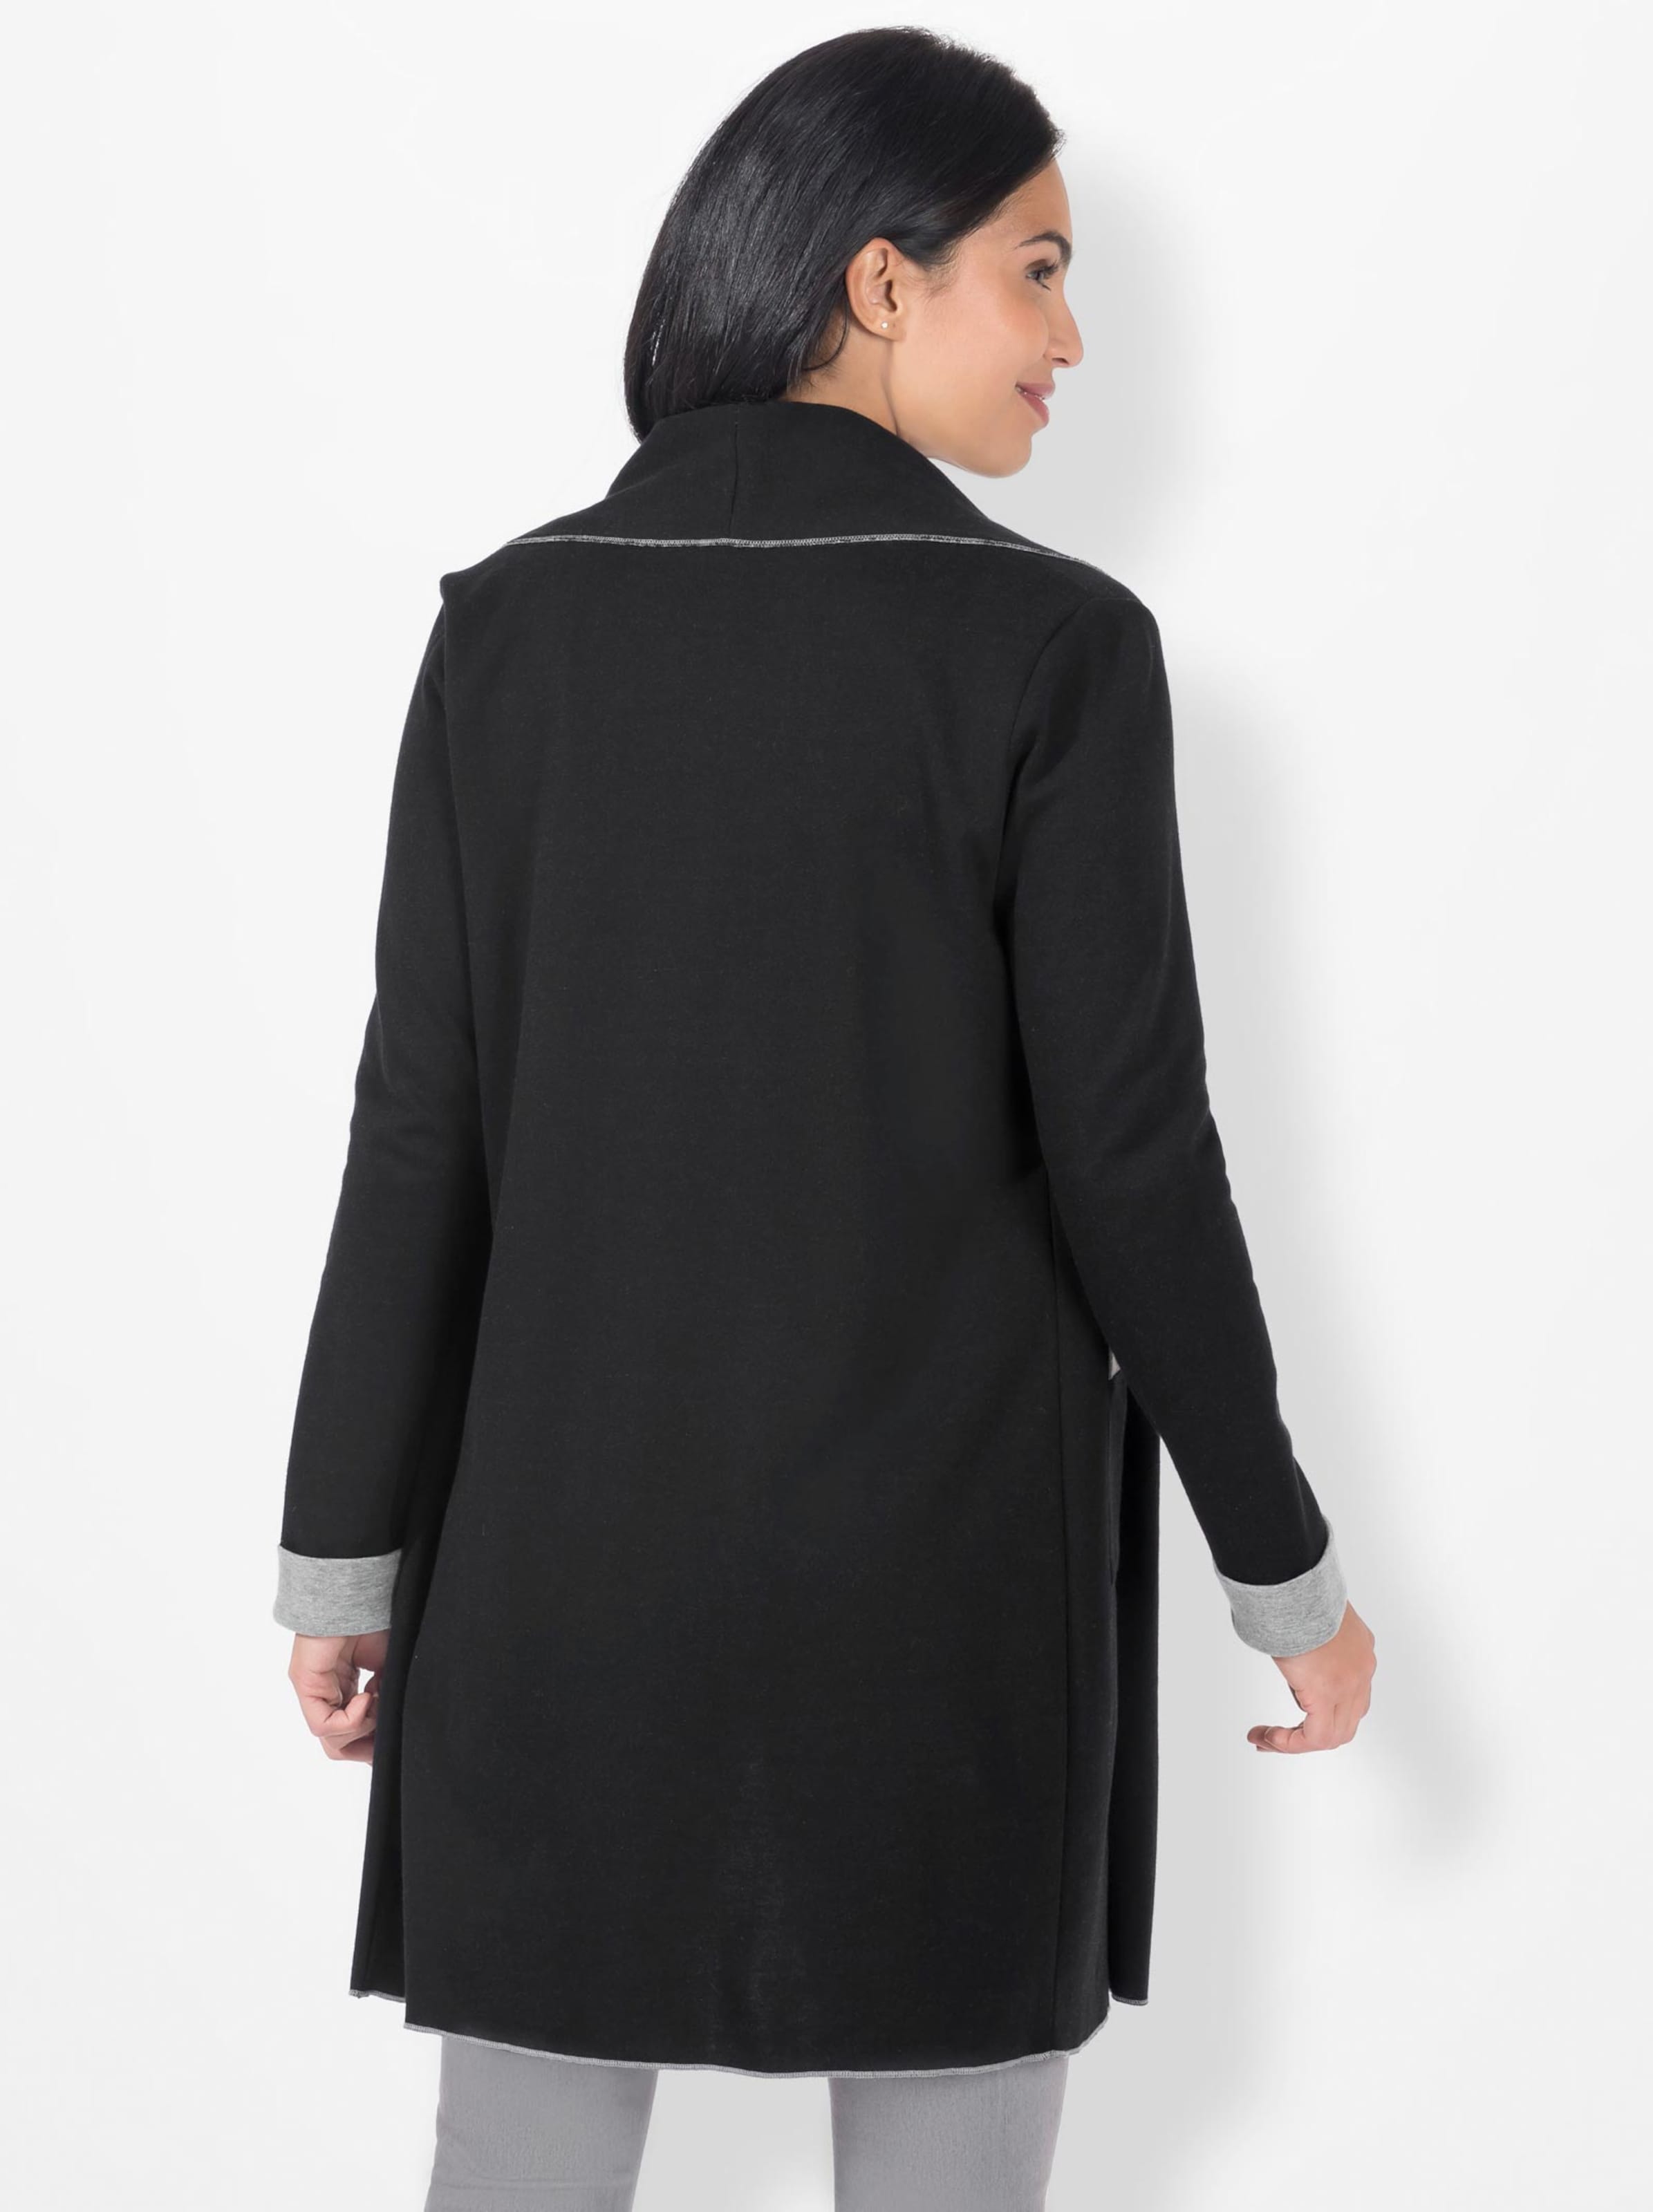 Damenmode Jacken Shirtjacke in schwarz-grau-meliert 